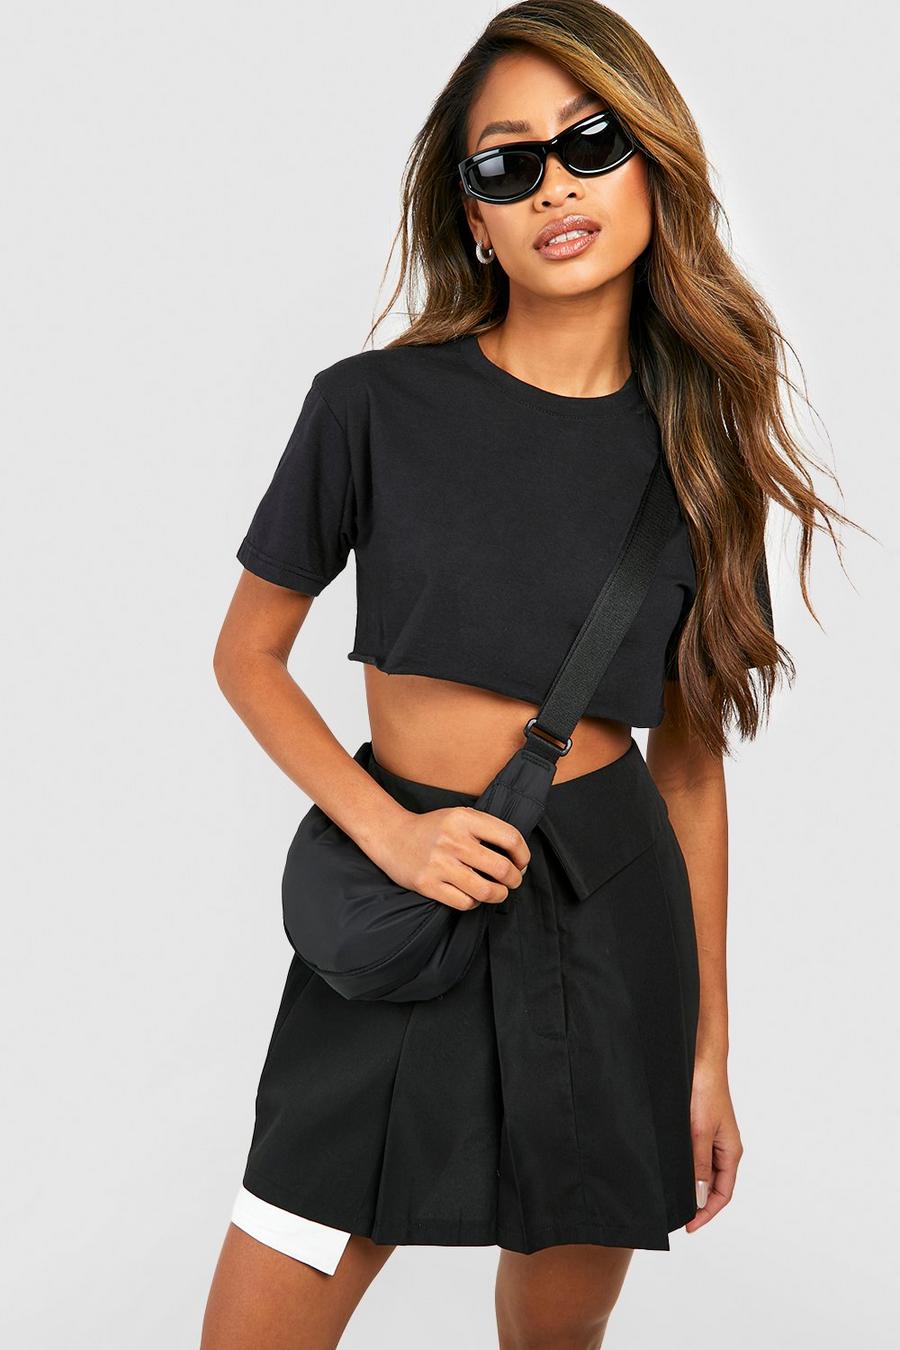 Black Fold Over Woven Tennis Skirt